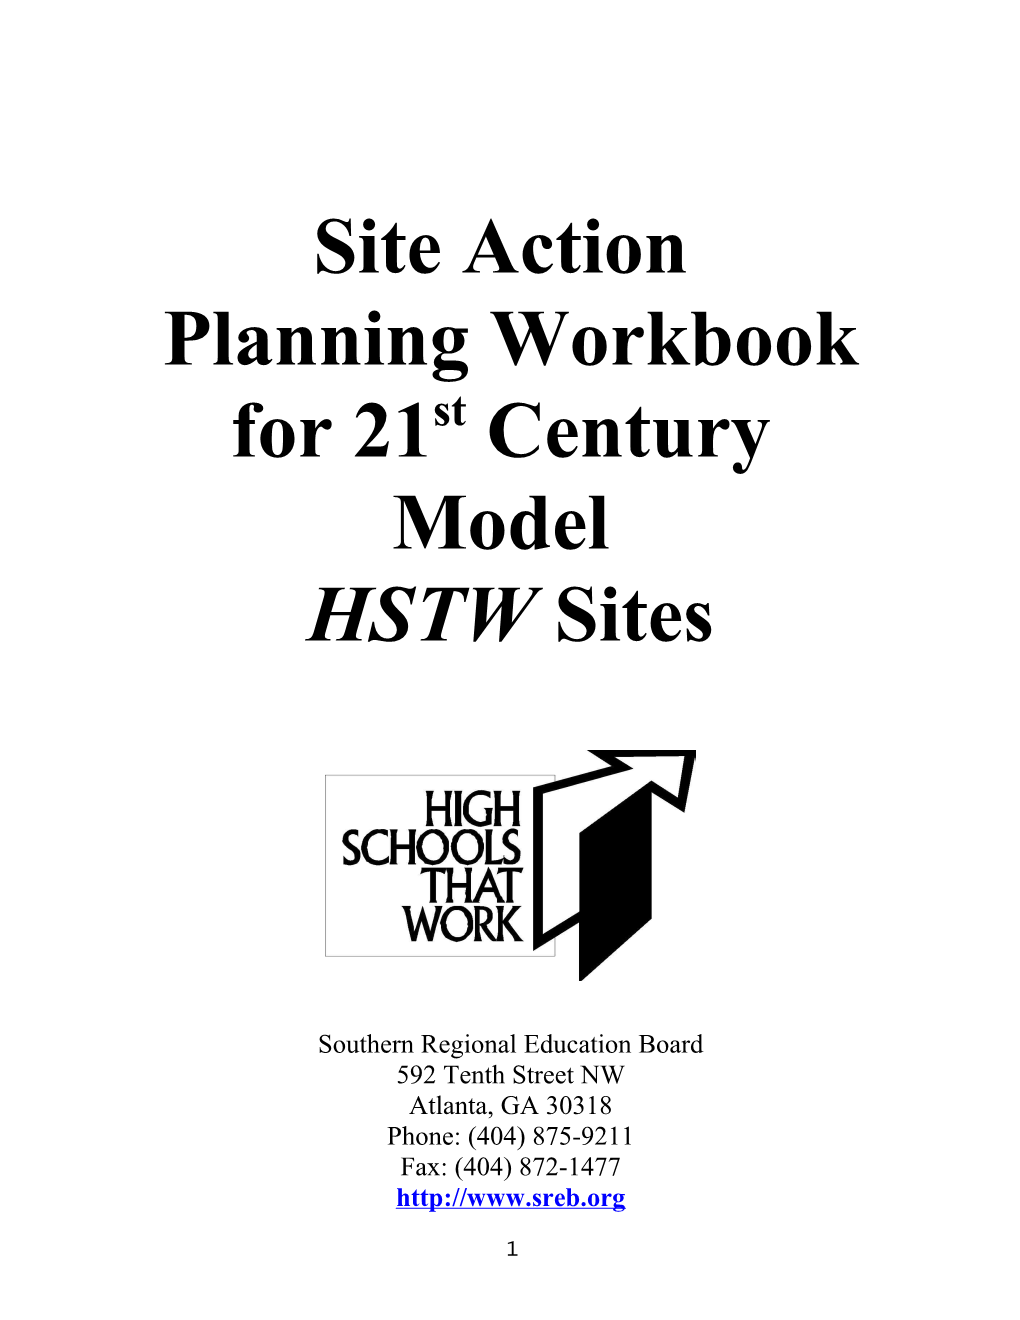 Planning Workbook